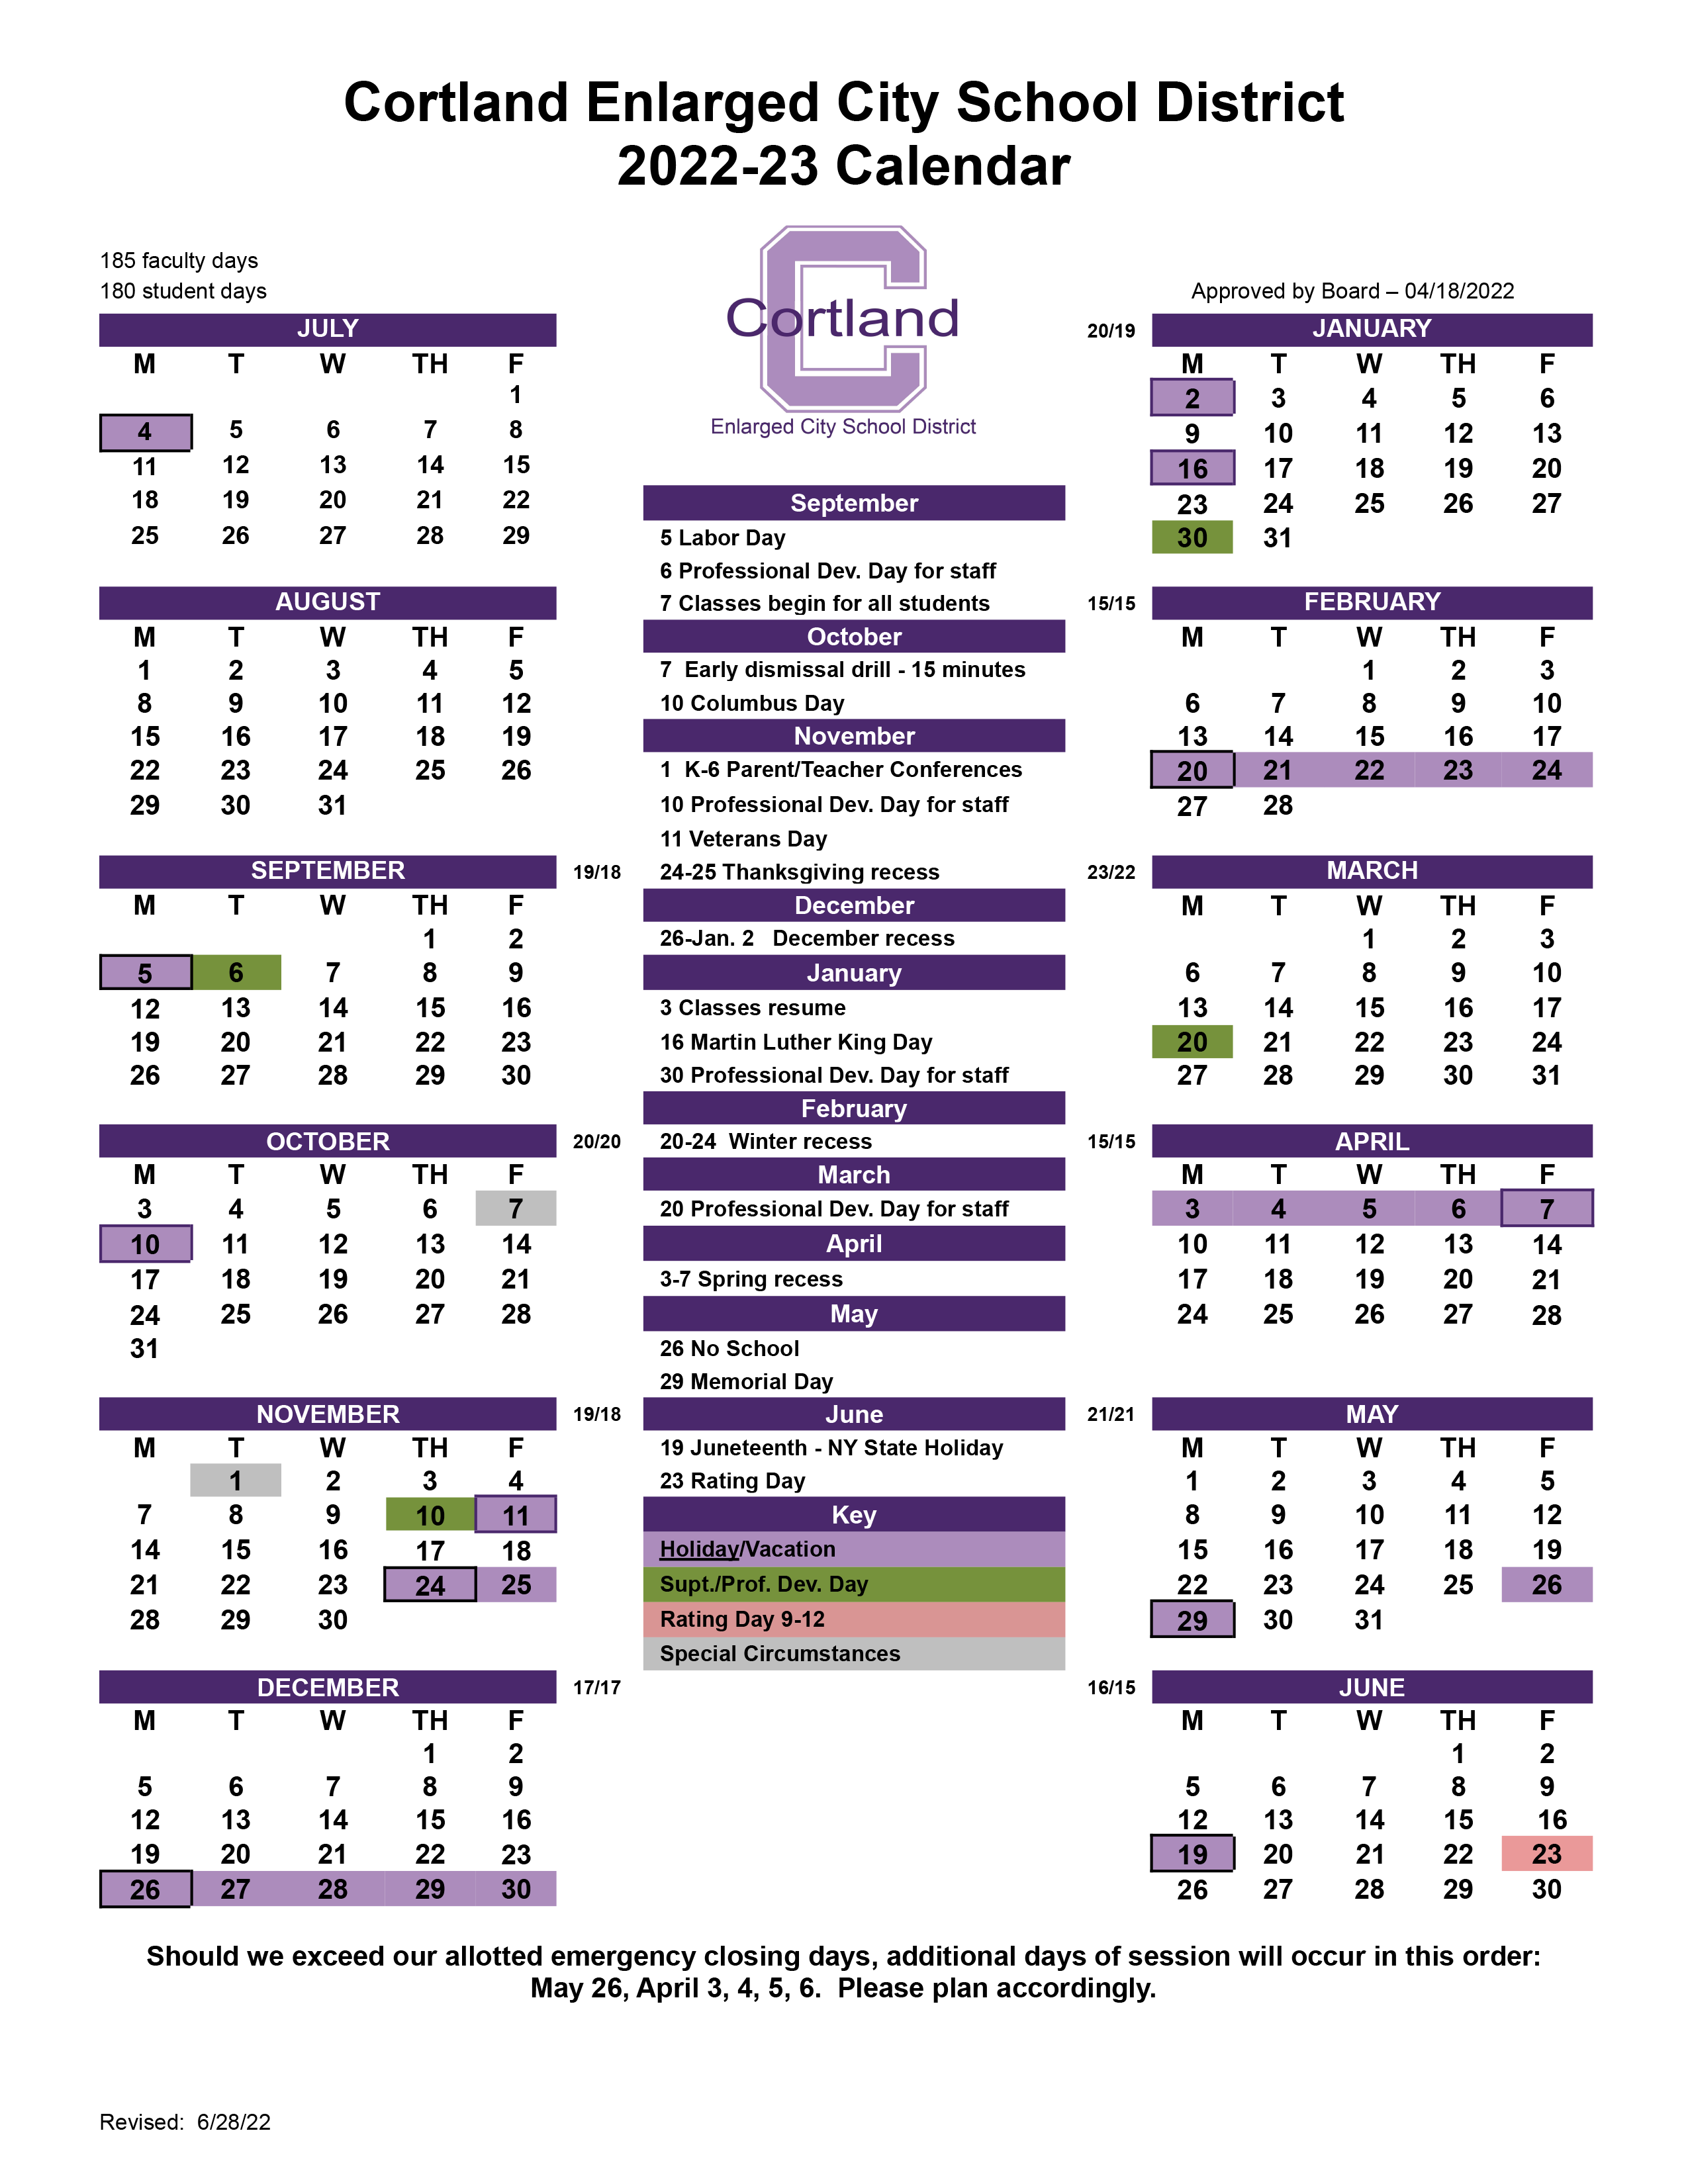 calendars-cortland-schools